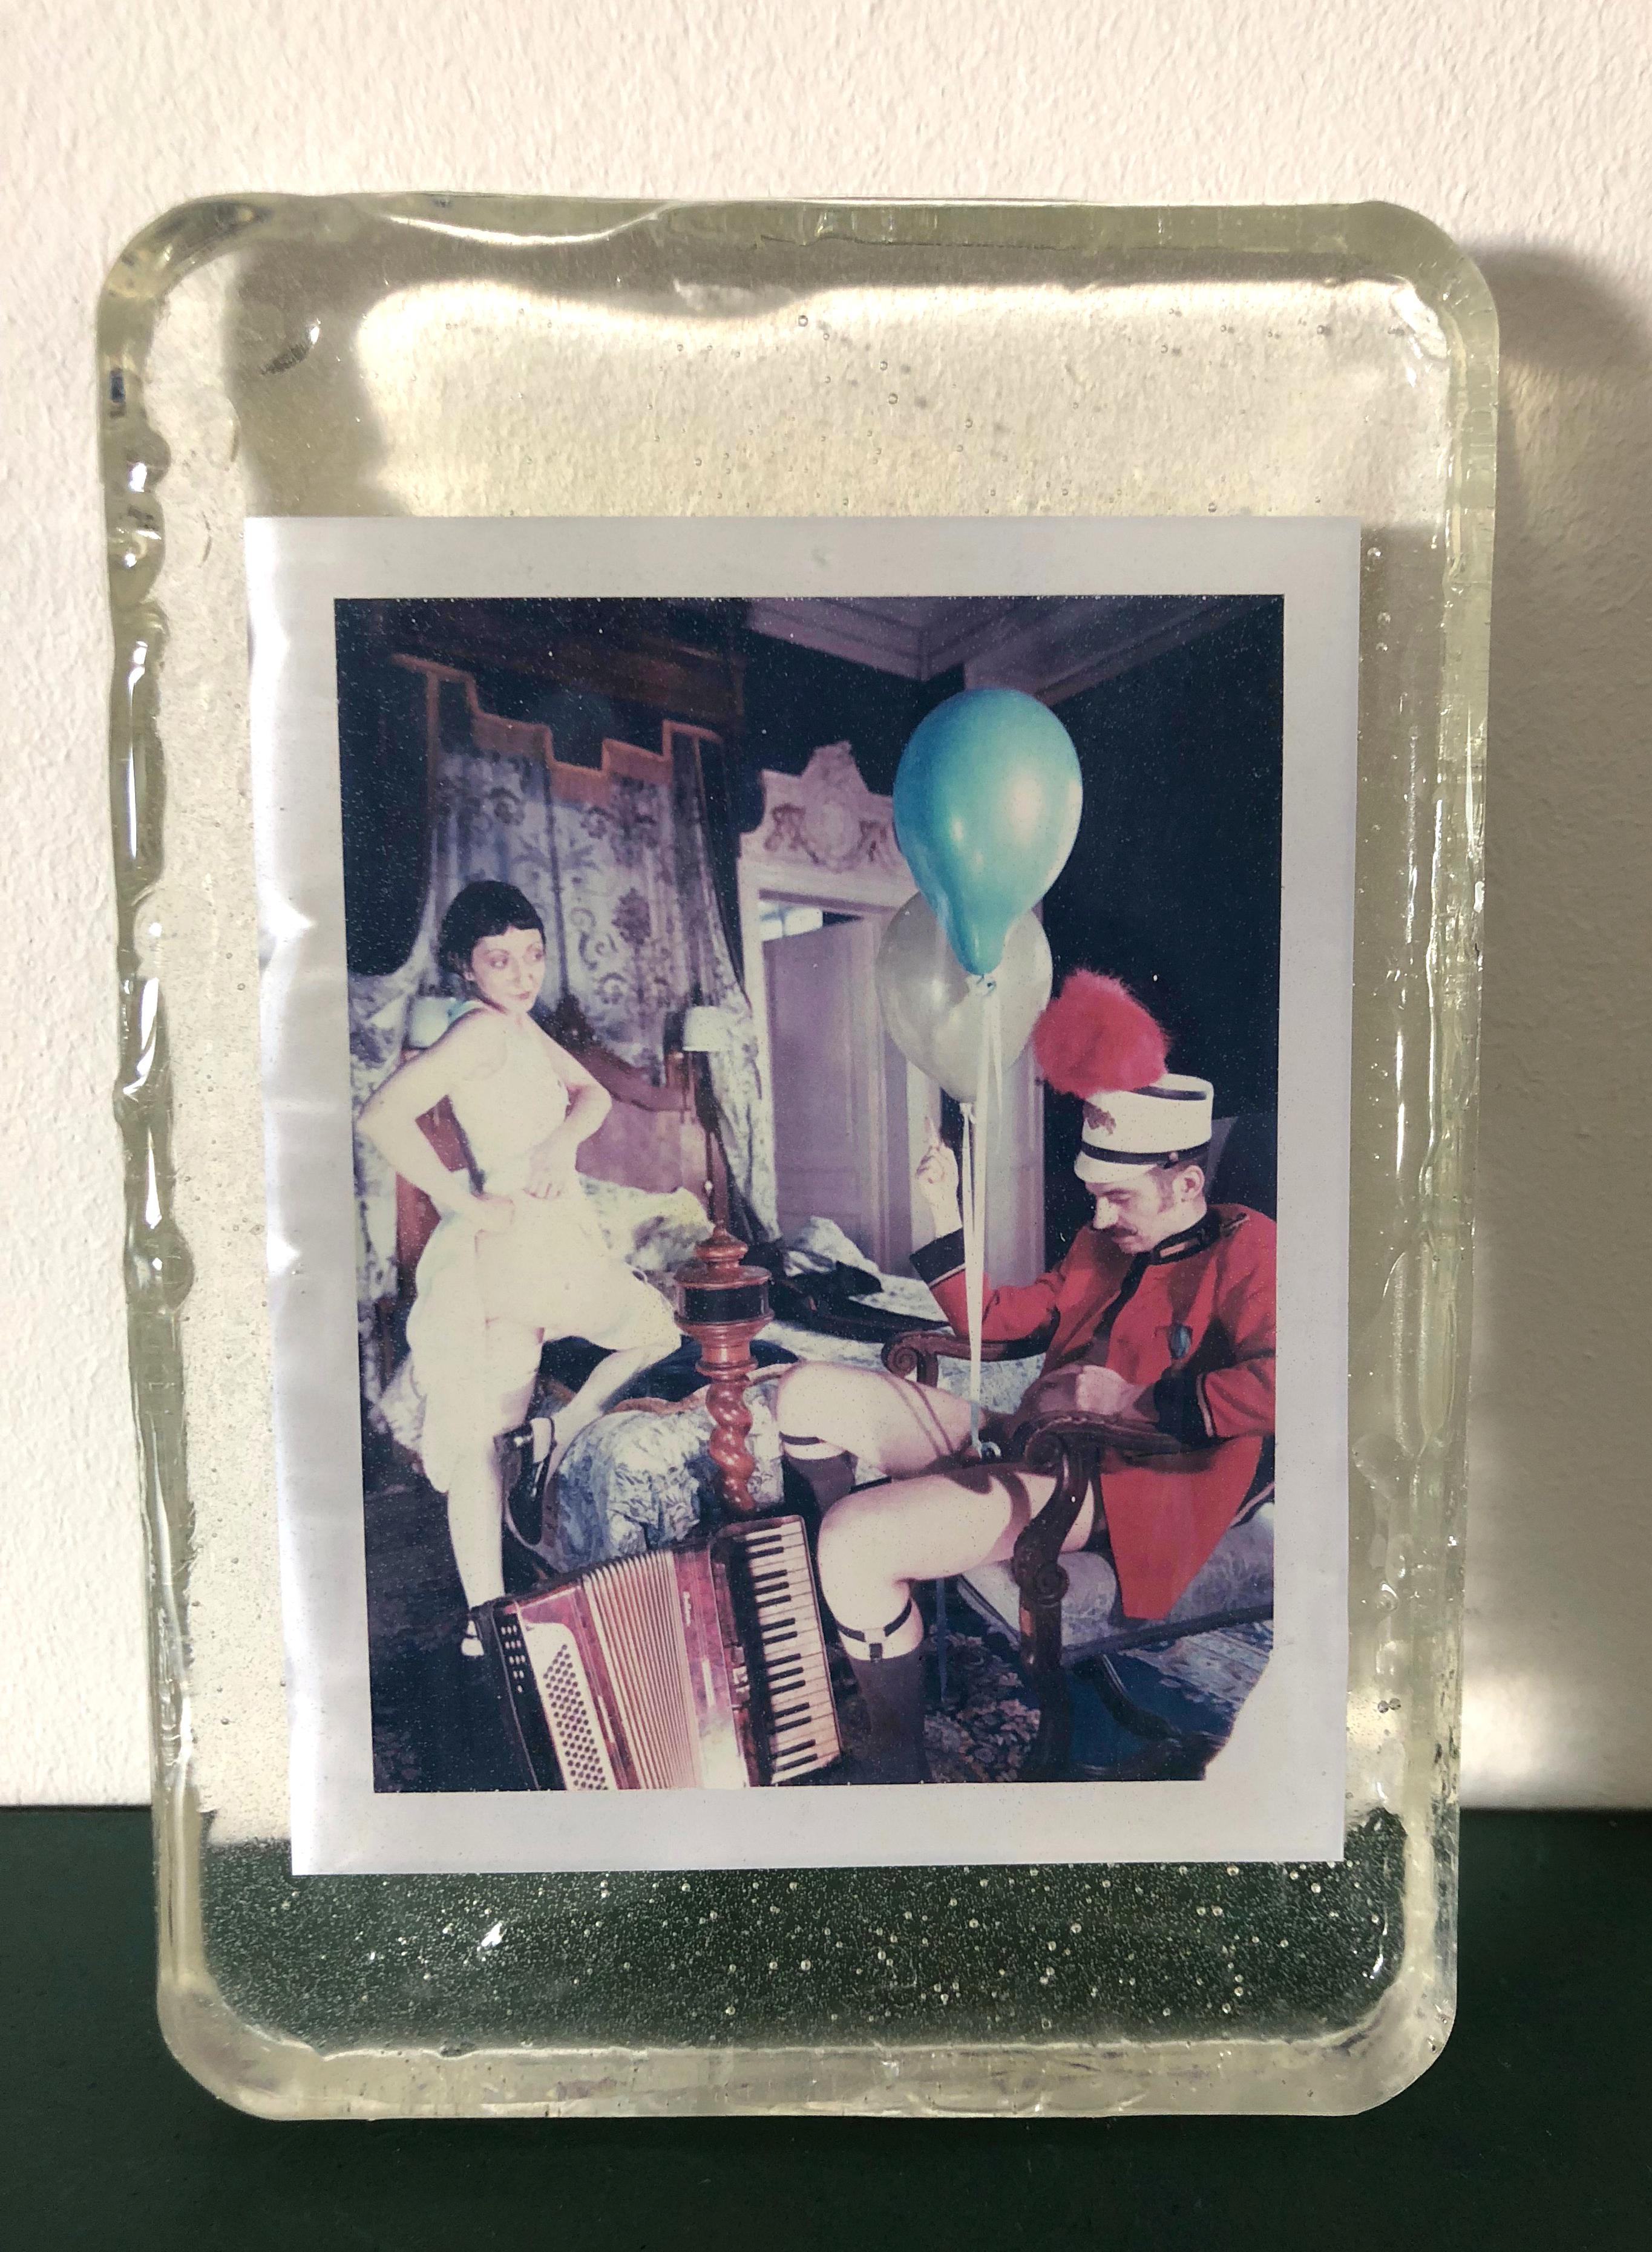 Eugne - Einzigartiges Stück - Original Polaroid, Frauen, zeitgenössisch, Farbe